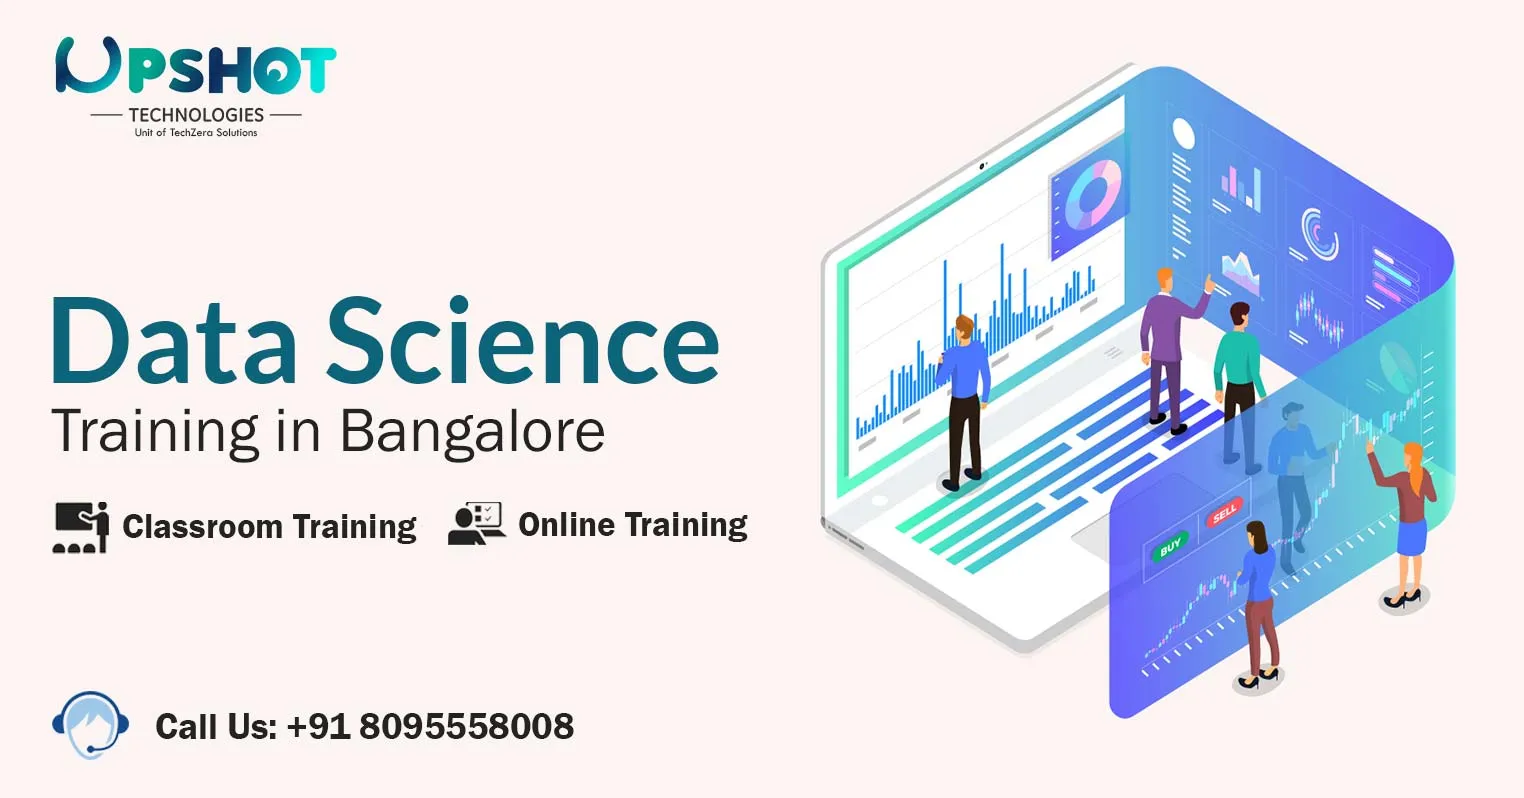 No.1 Data Science Training Institute in Bangalore